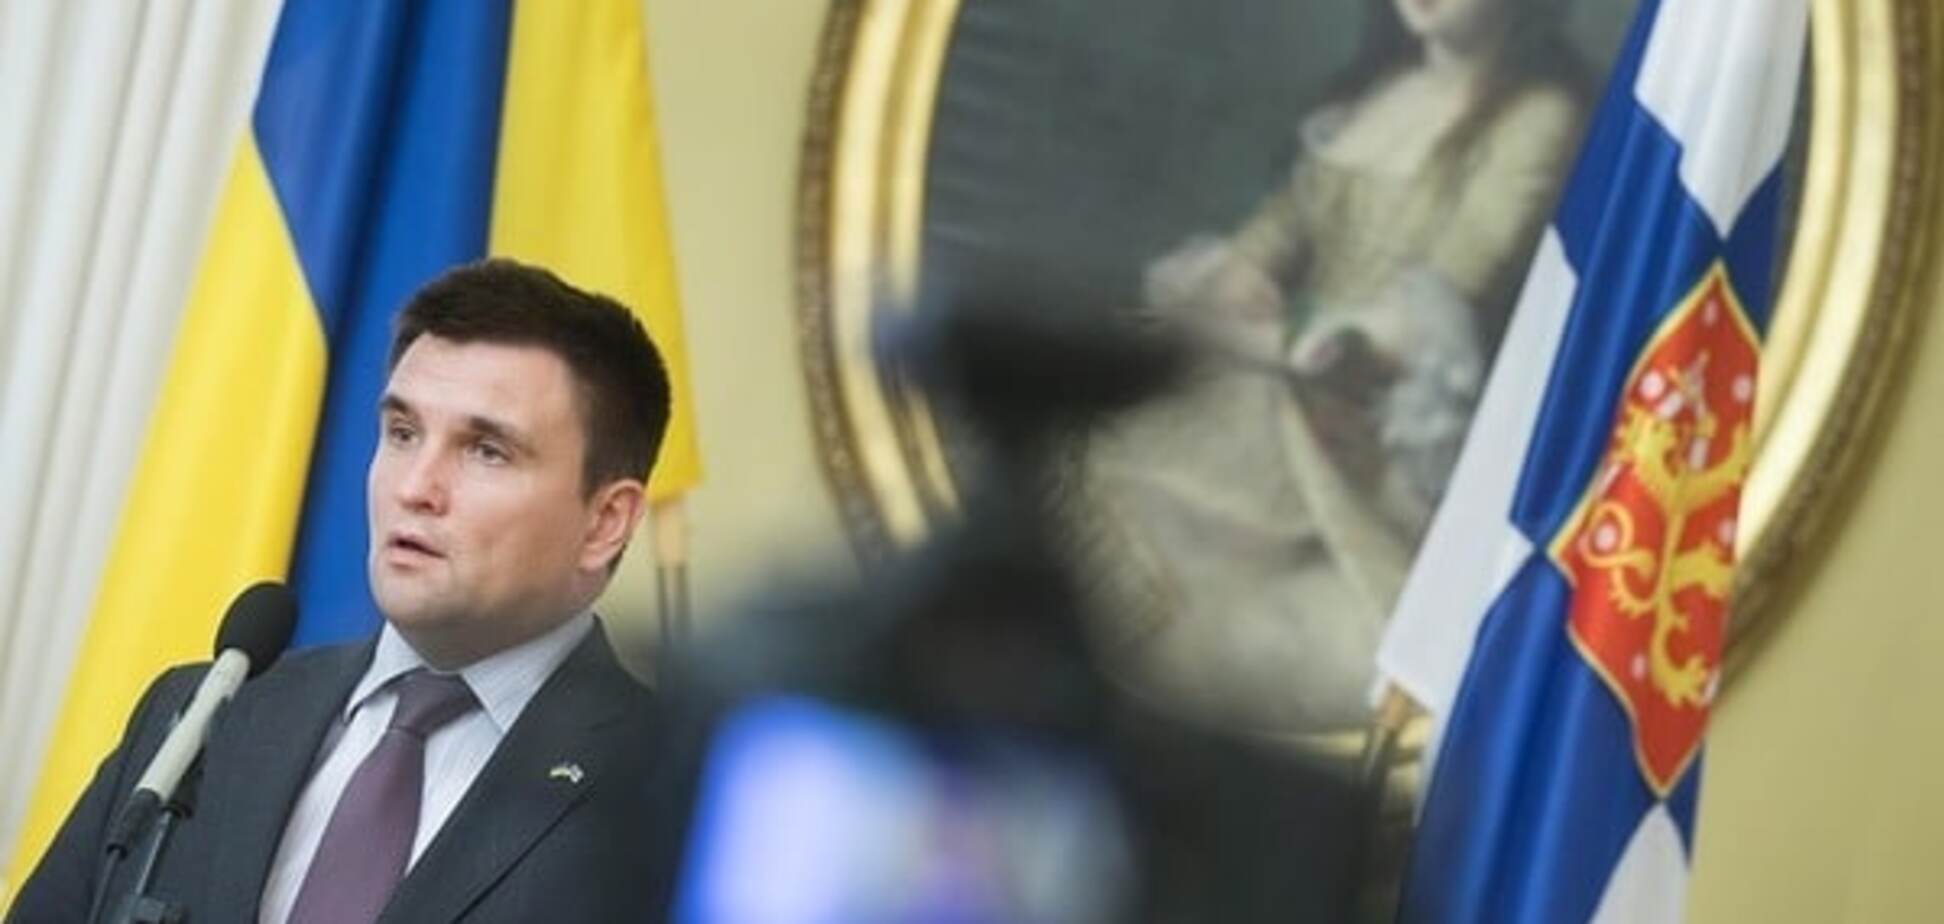 Коррупция во власти: нардеп обвинил главу МИД Украины в 'неприкрытой лжи'